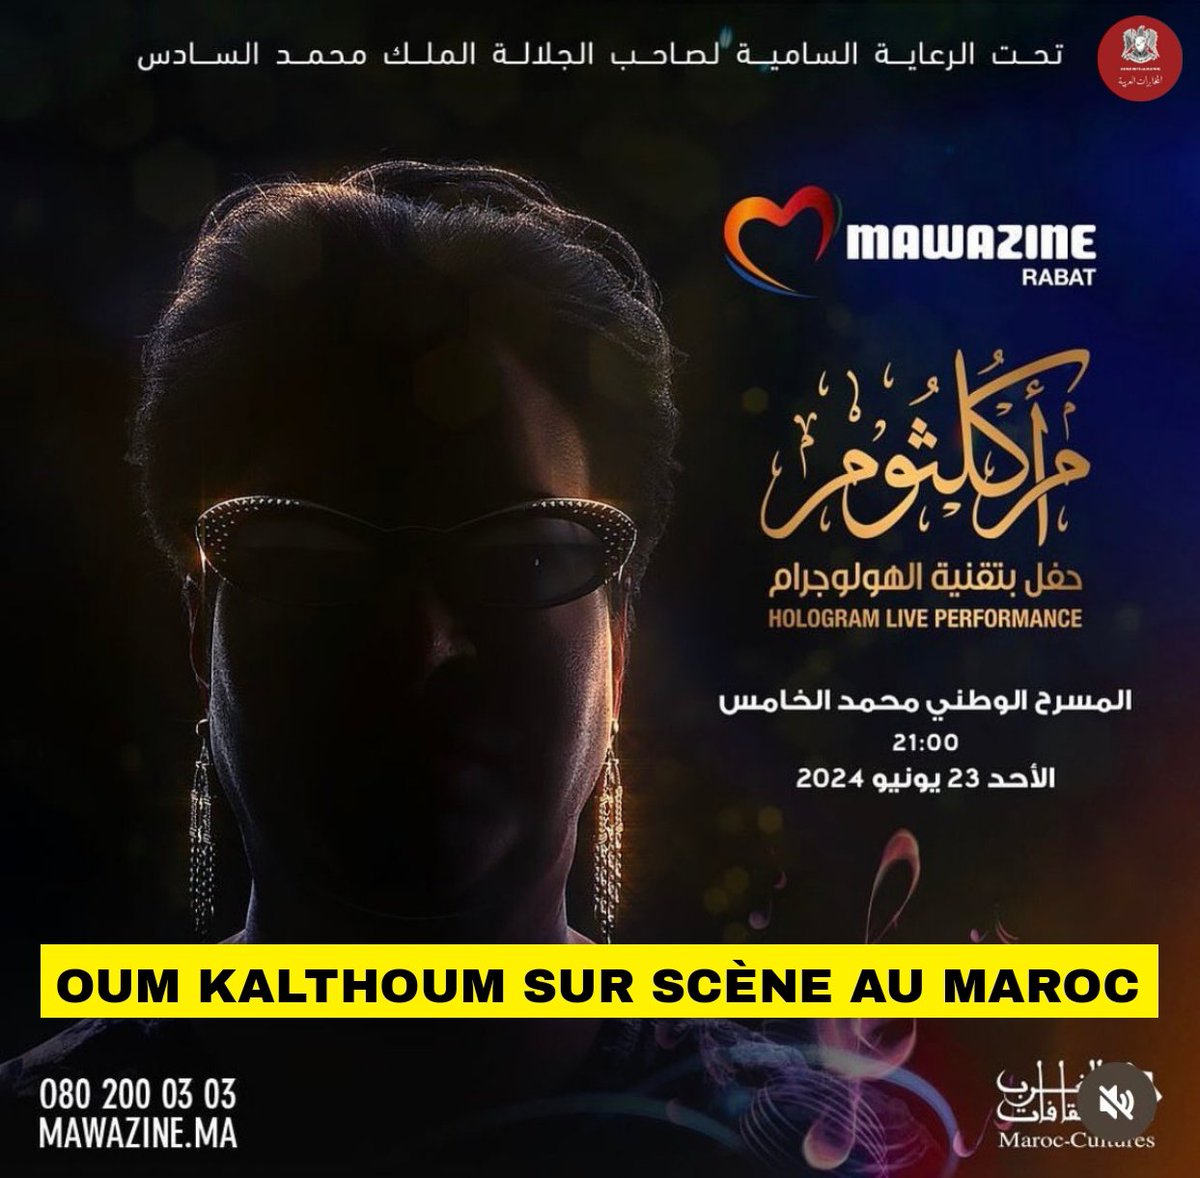 🇲🇦 🇪🇬 🎼 #Culture | L'astre de l'Orient, Oum Kalthoum, va ressusciter sur scène au #Maroc. La légendaire chanteuse égyptienne Oum Kalthoum chantera sur scène au Théâtre Mohammed V de Rabat au Maroc, non pas physiquement mais sous la forme d'un hologramme, pour le célèbre…